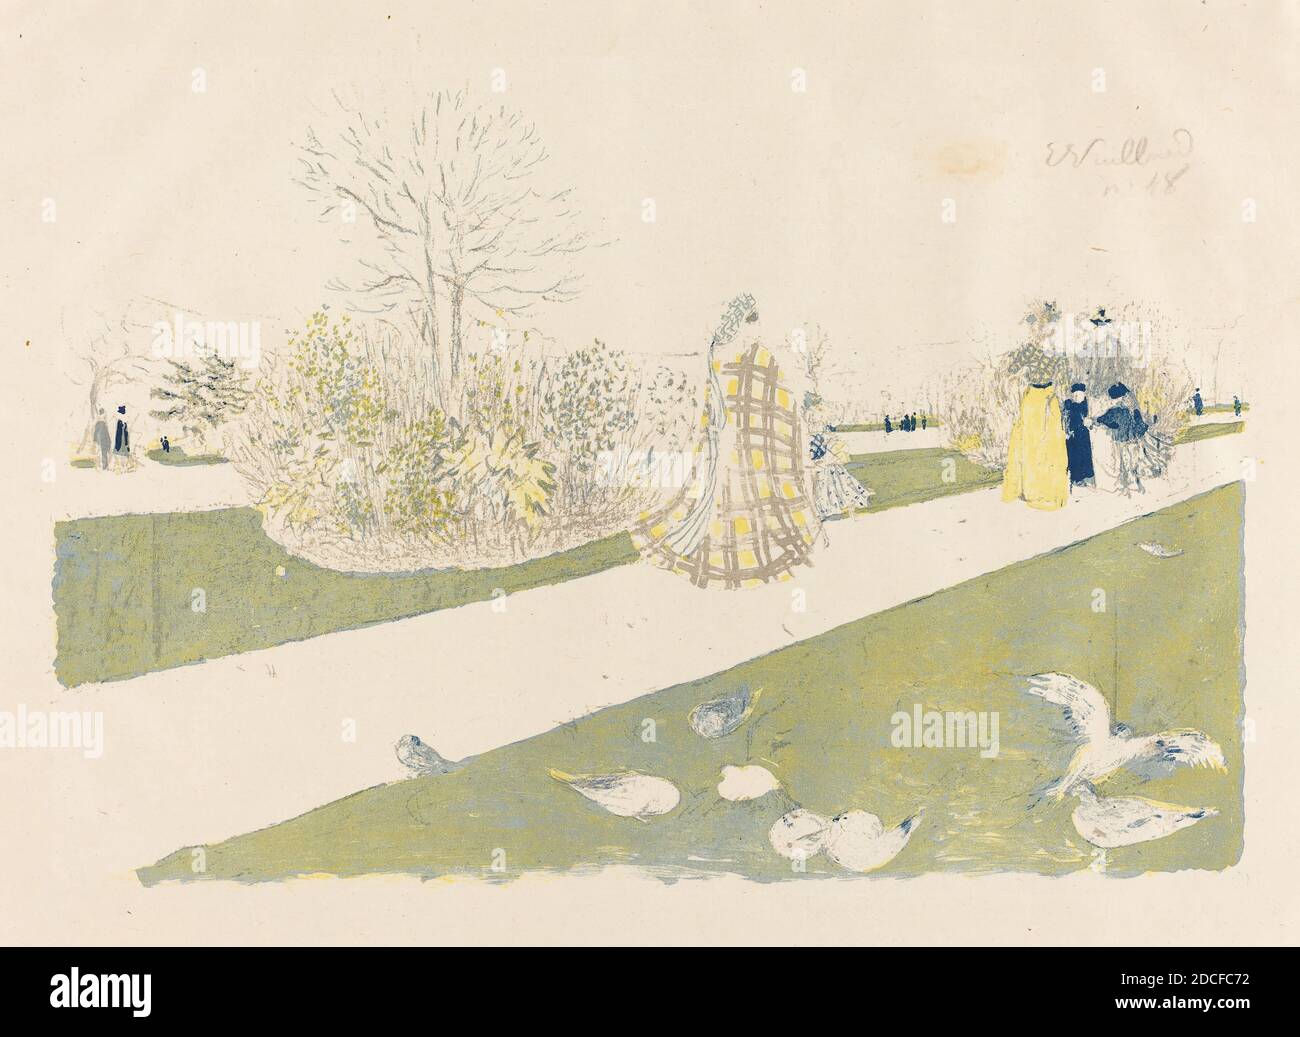 Edouard Vuillard, (artiste), Français, 1868 - 1940, le jardin des Tuileries, l'Album des tourbières-graveurs, (série), publié en 1896, lithographie couleur sur papier chinois, total: 42.8 x 57.3 cm (16 7/8 x 22 9/16 po Banque D'Images